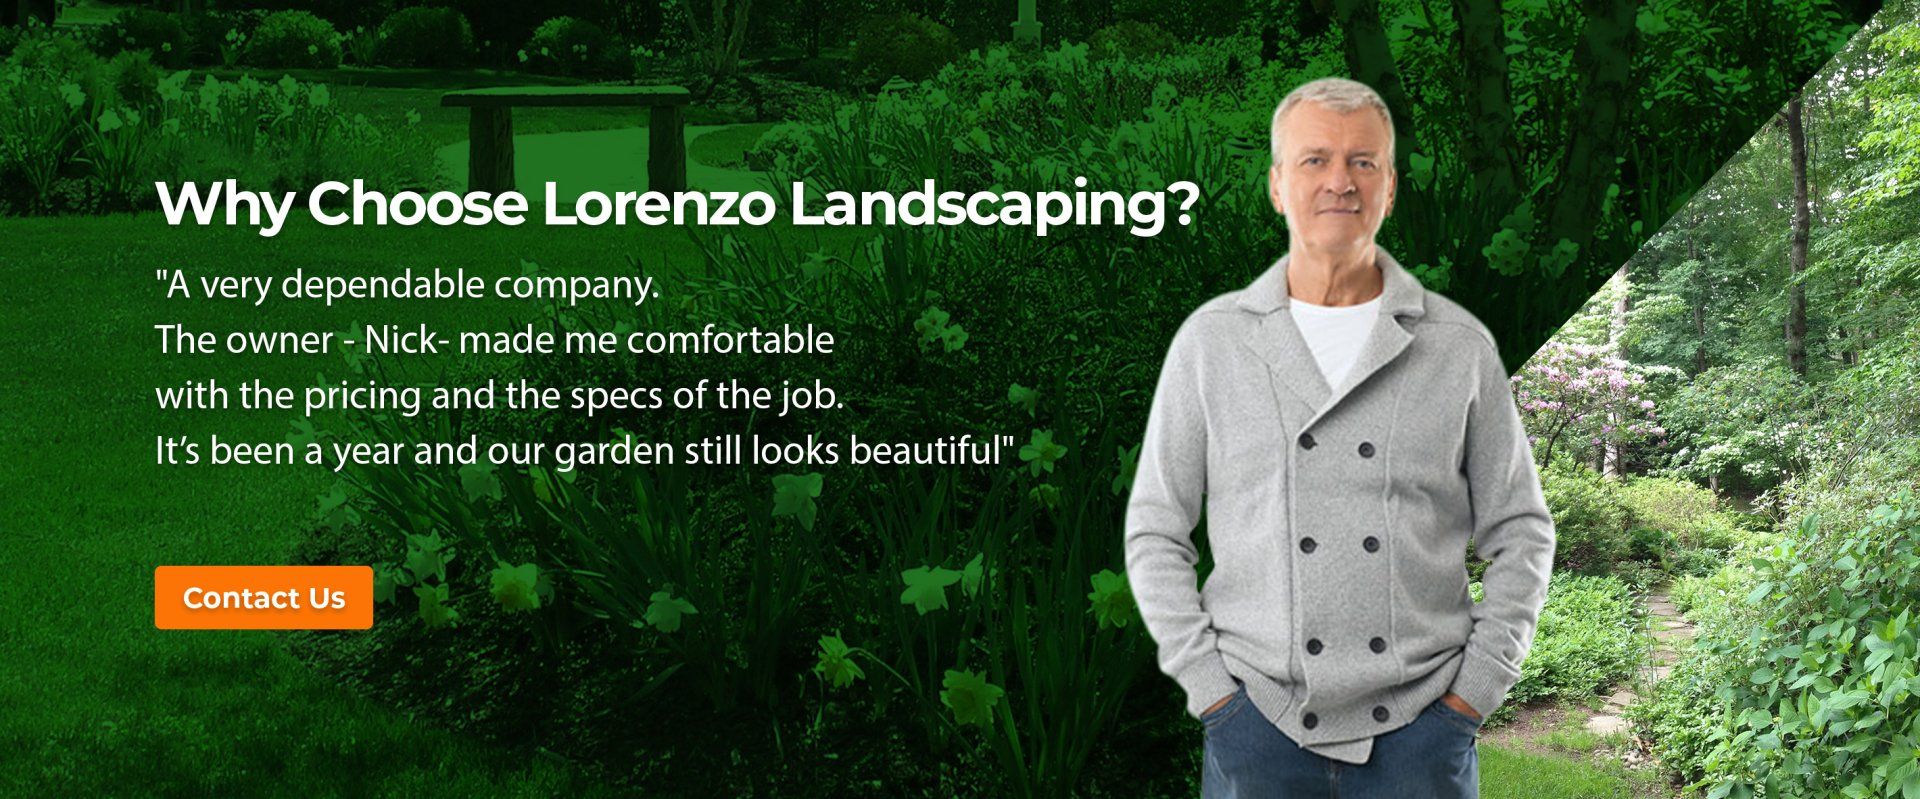 Lorenzo Landscaping